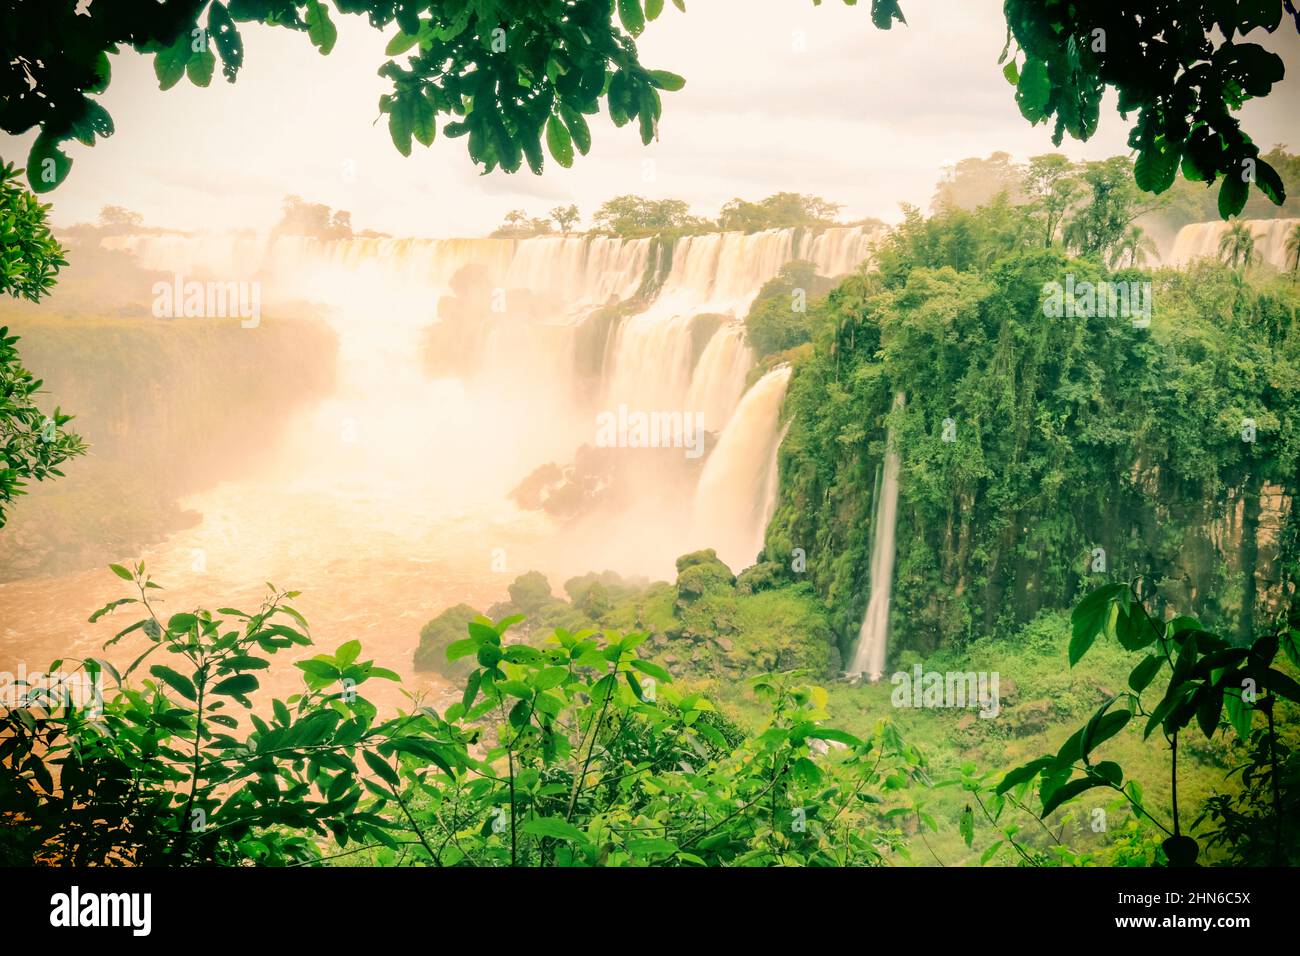 Cascate di Iguazu al confine tra Brasile e Argentina. Una delle grandi meraviglie naturali del mondo, cascate. Immagine del concetto di turismo Foto Stock